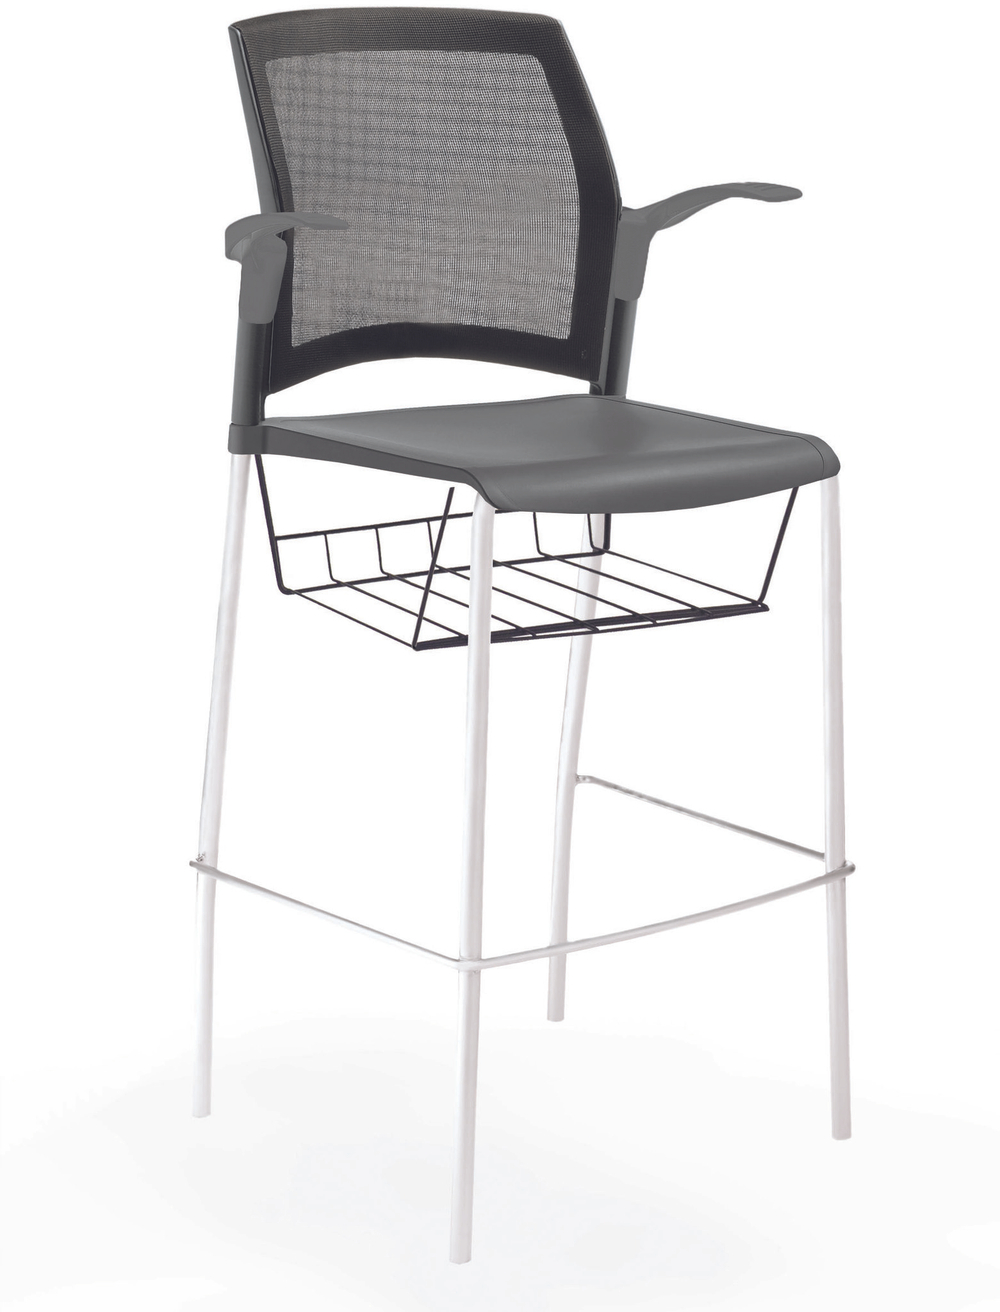 стул Rewind стул барный на 4 ногах, каркас белый, пластик серый, спинка-сетка, с открытыми подлокотниками, с подседельной крышкой